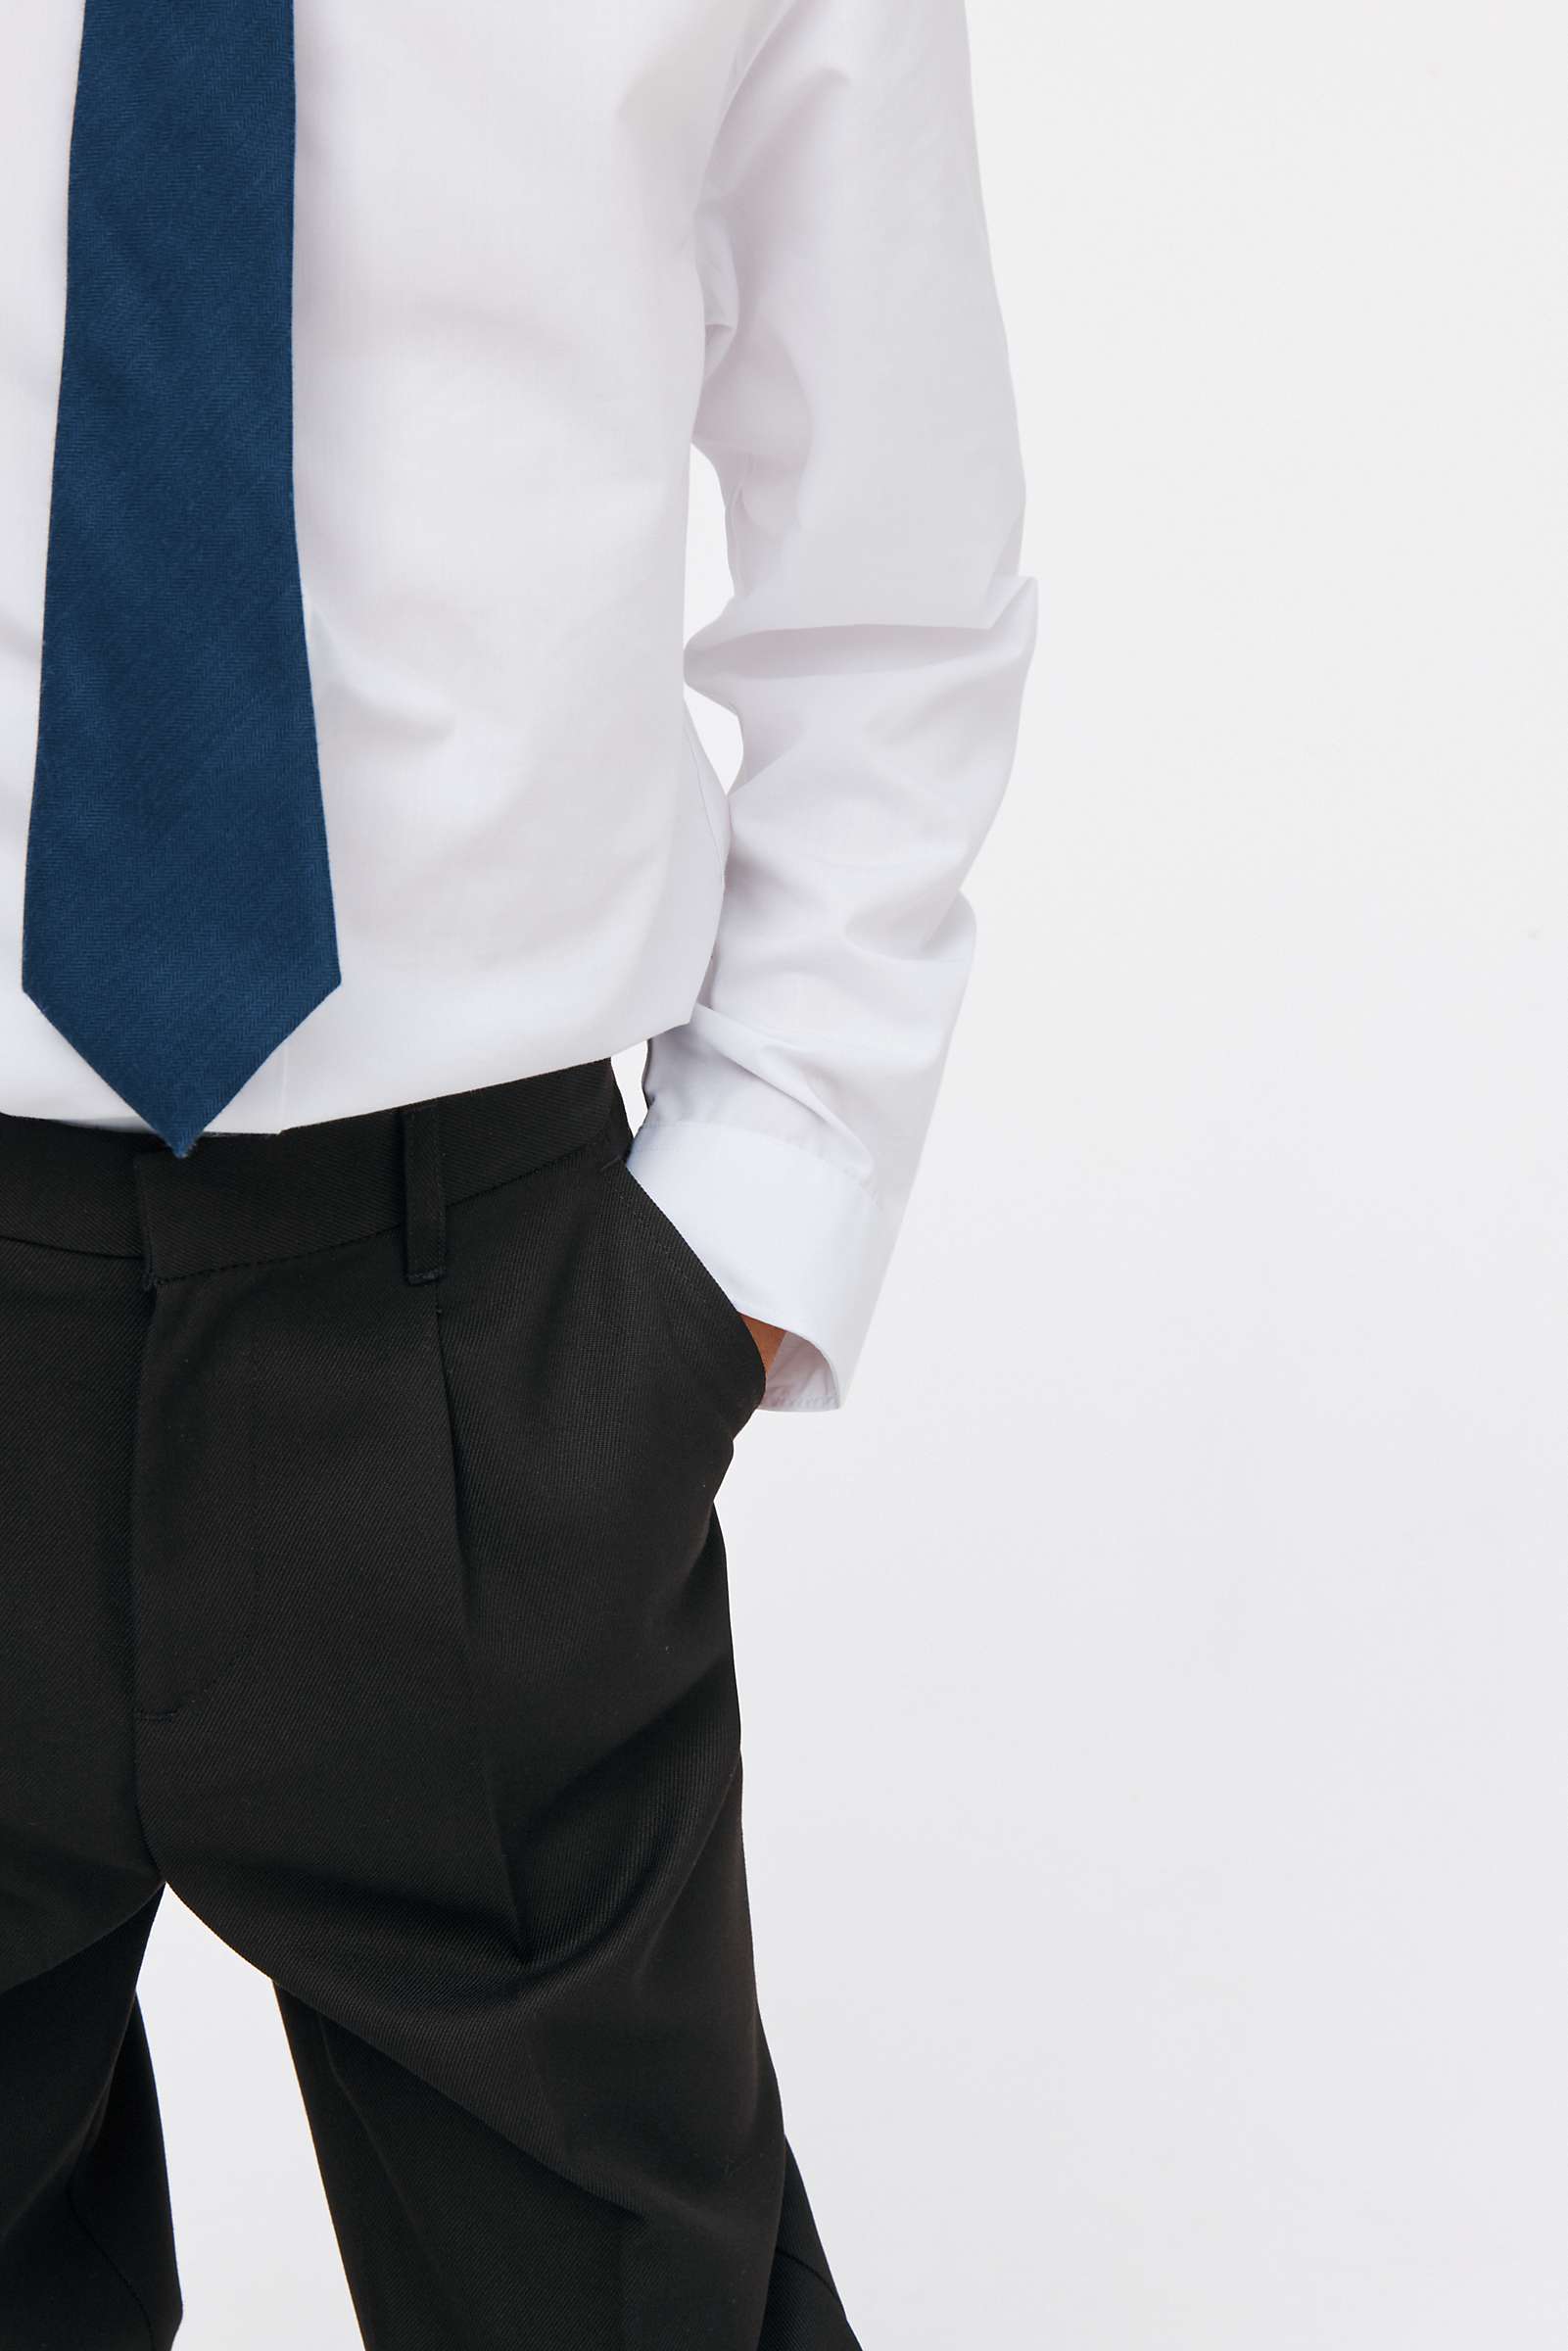 Buy John Lewis Boys' Adjustable Waist Slim Fit School Trousers Online at johnlewis.com